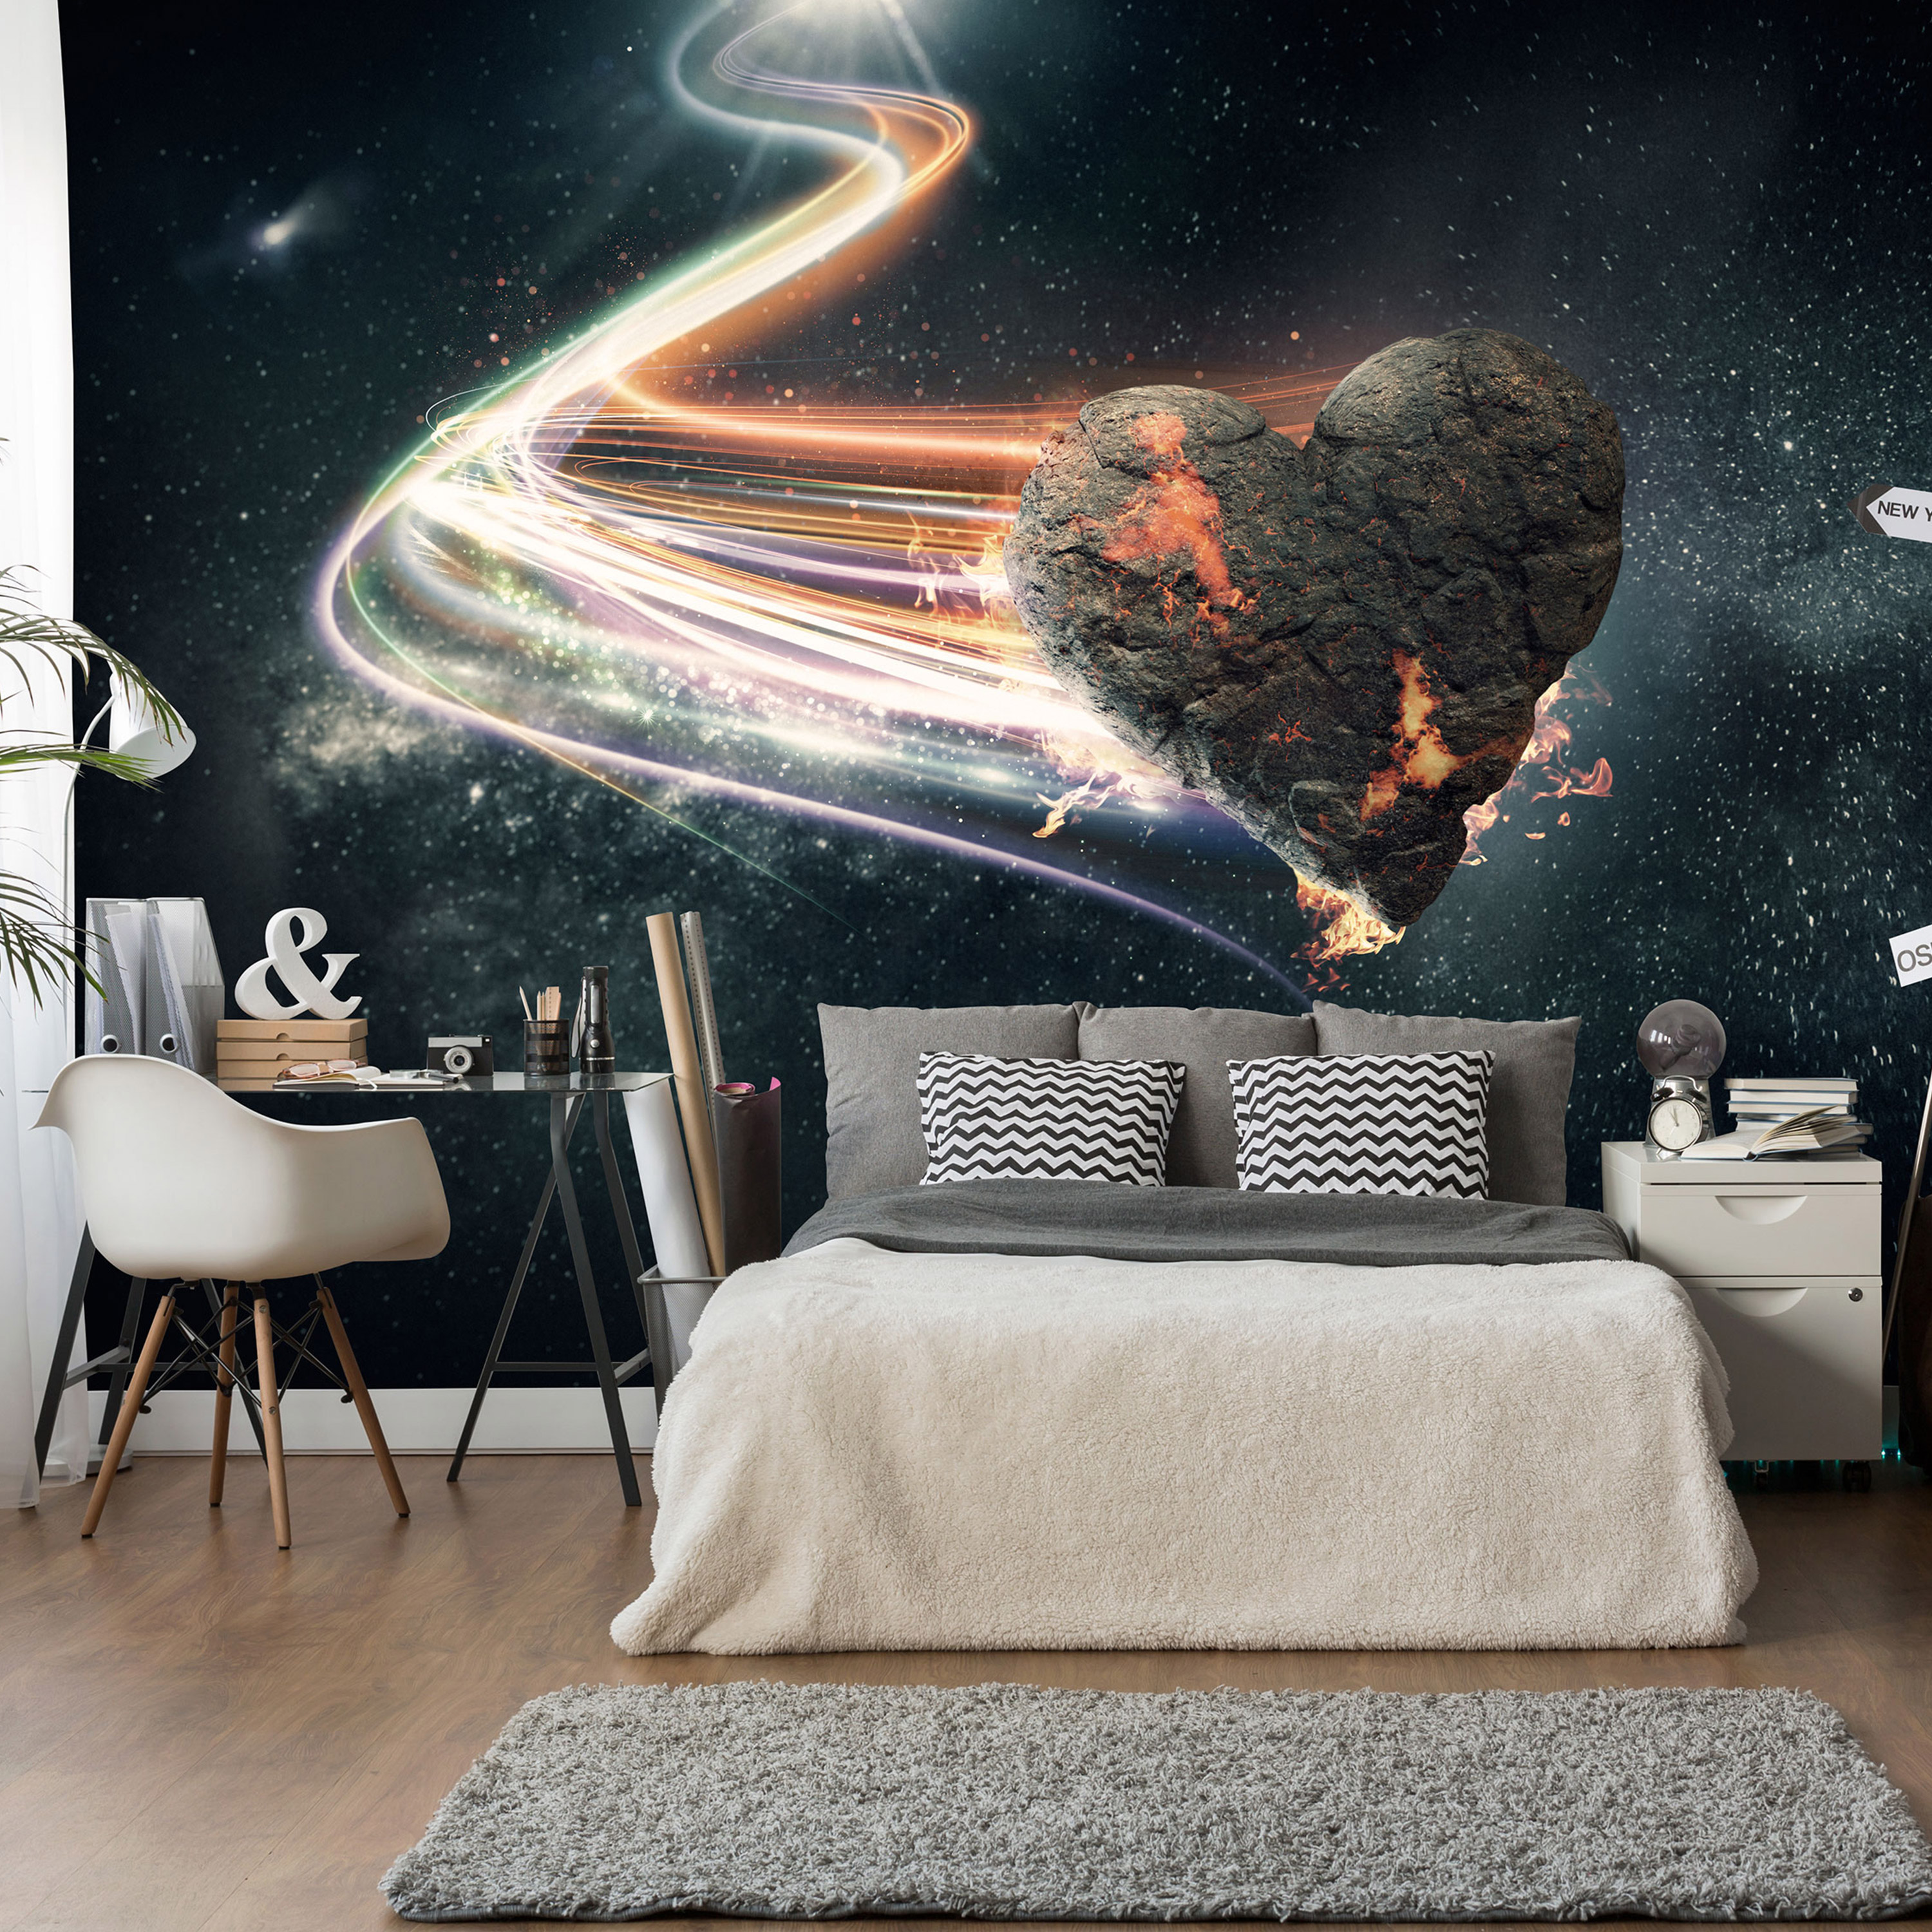 Self-adhesive Wallpaper - Love Meteorite - 98x70